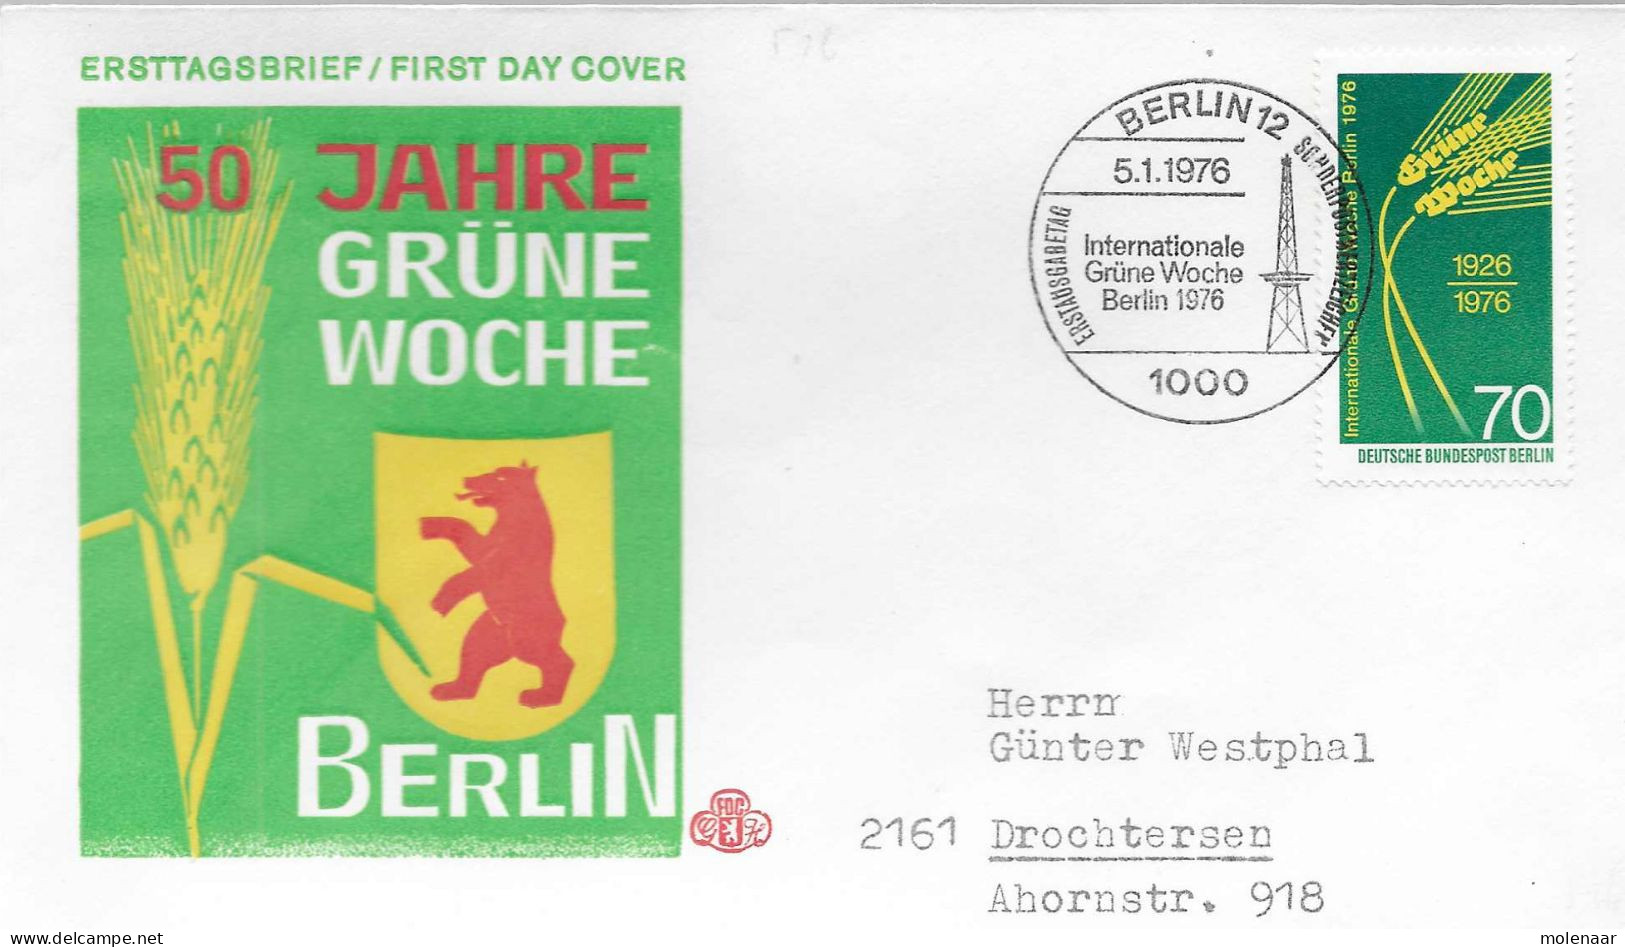 Postzegels > Europa > Duitsland > Berlijn > 1970-1979 > Brief Met 516 (17209) - Briefe U. Dokumente